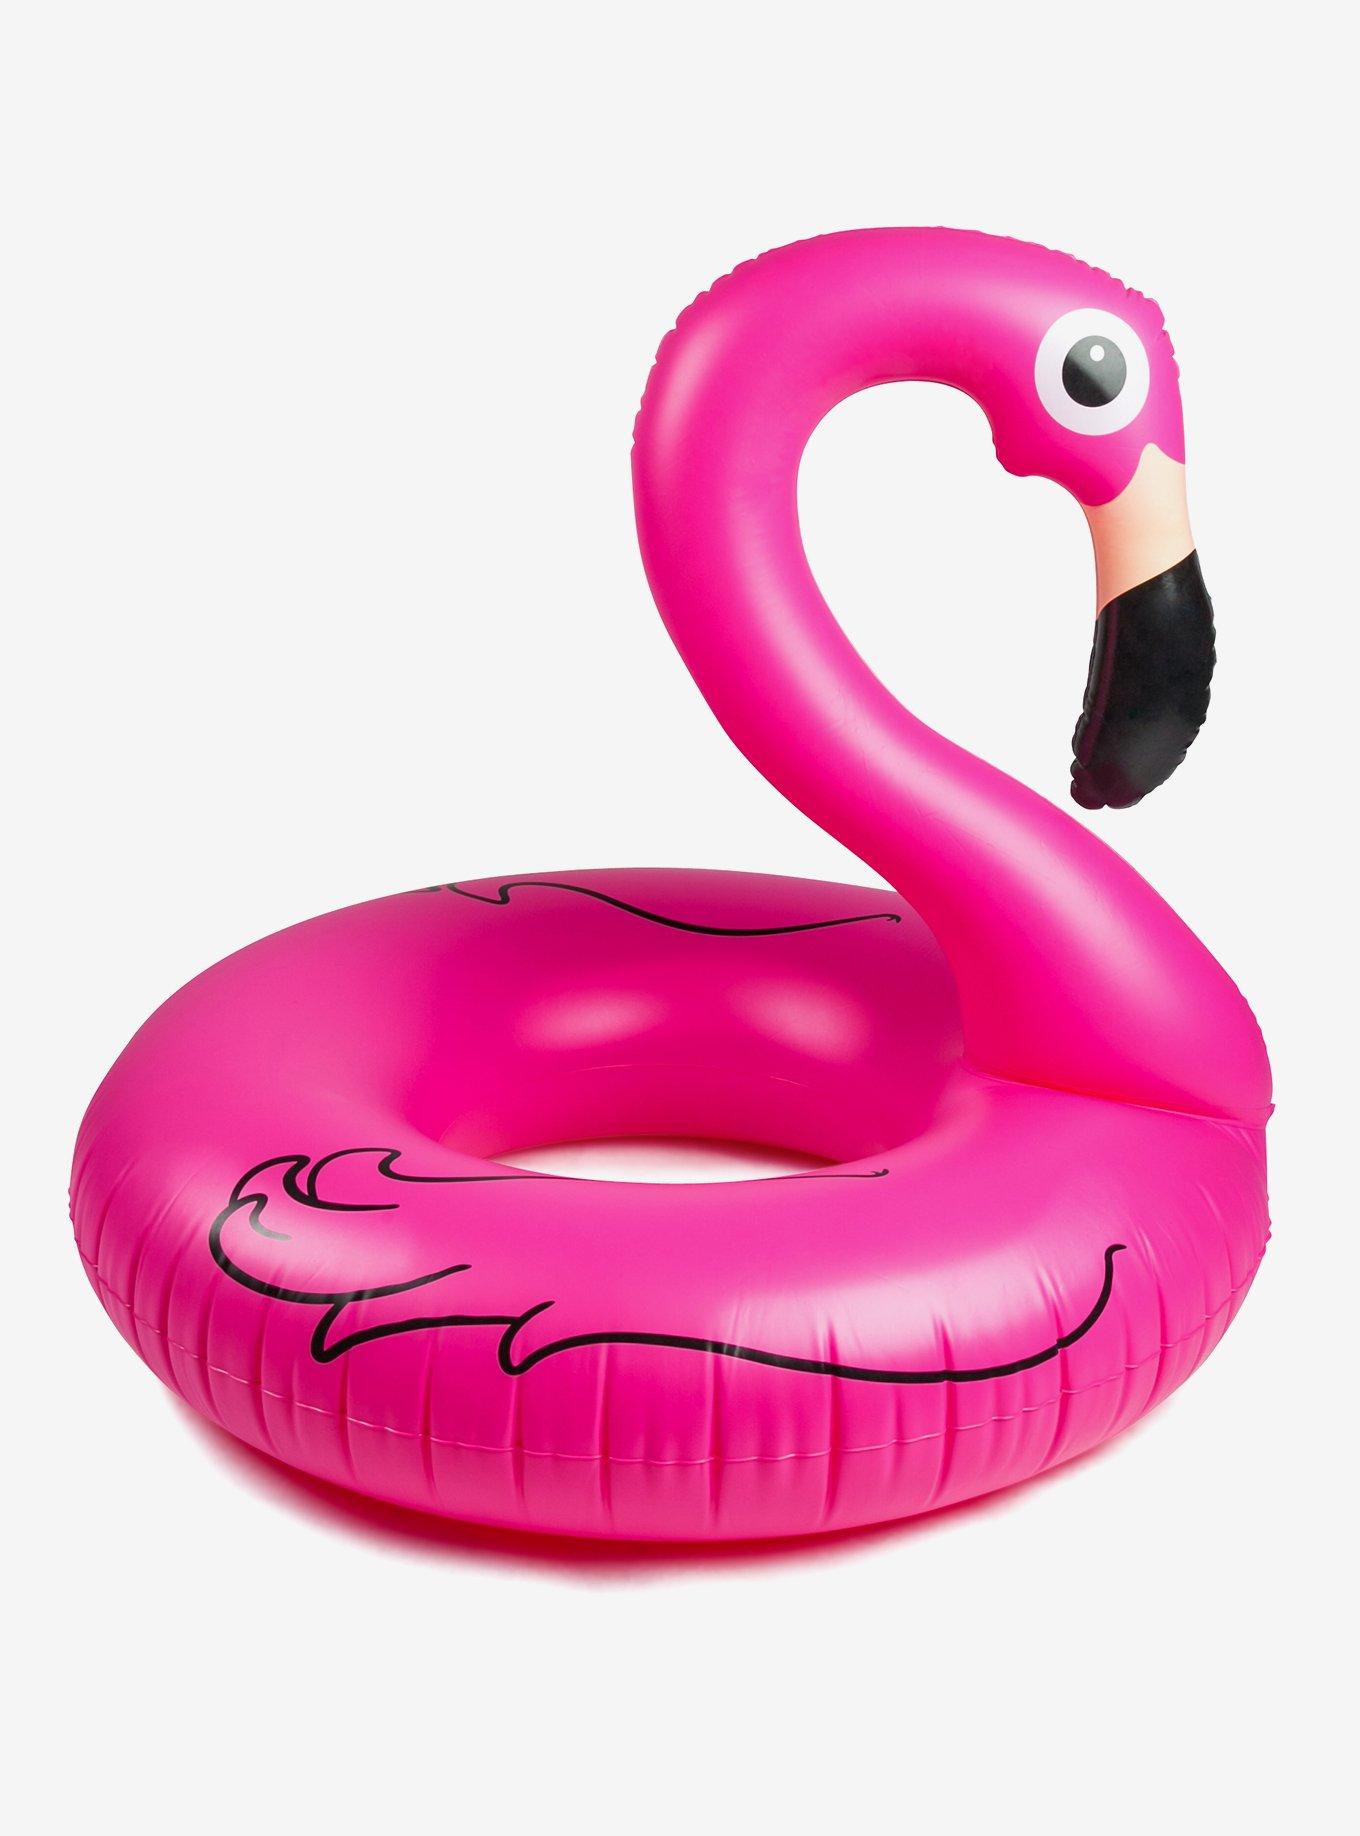 Фламинго для плавания. Круг Фламинго 90 см. Надувной круг Фламинго 120. Надувной круг "Фламинго" 90 см. Надувной круг Фламинго розовый 120 см.